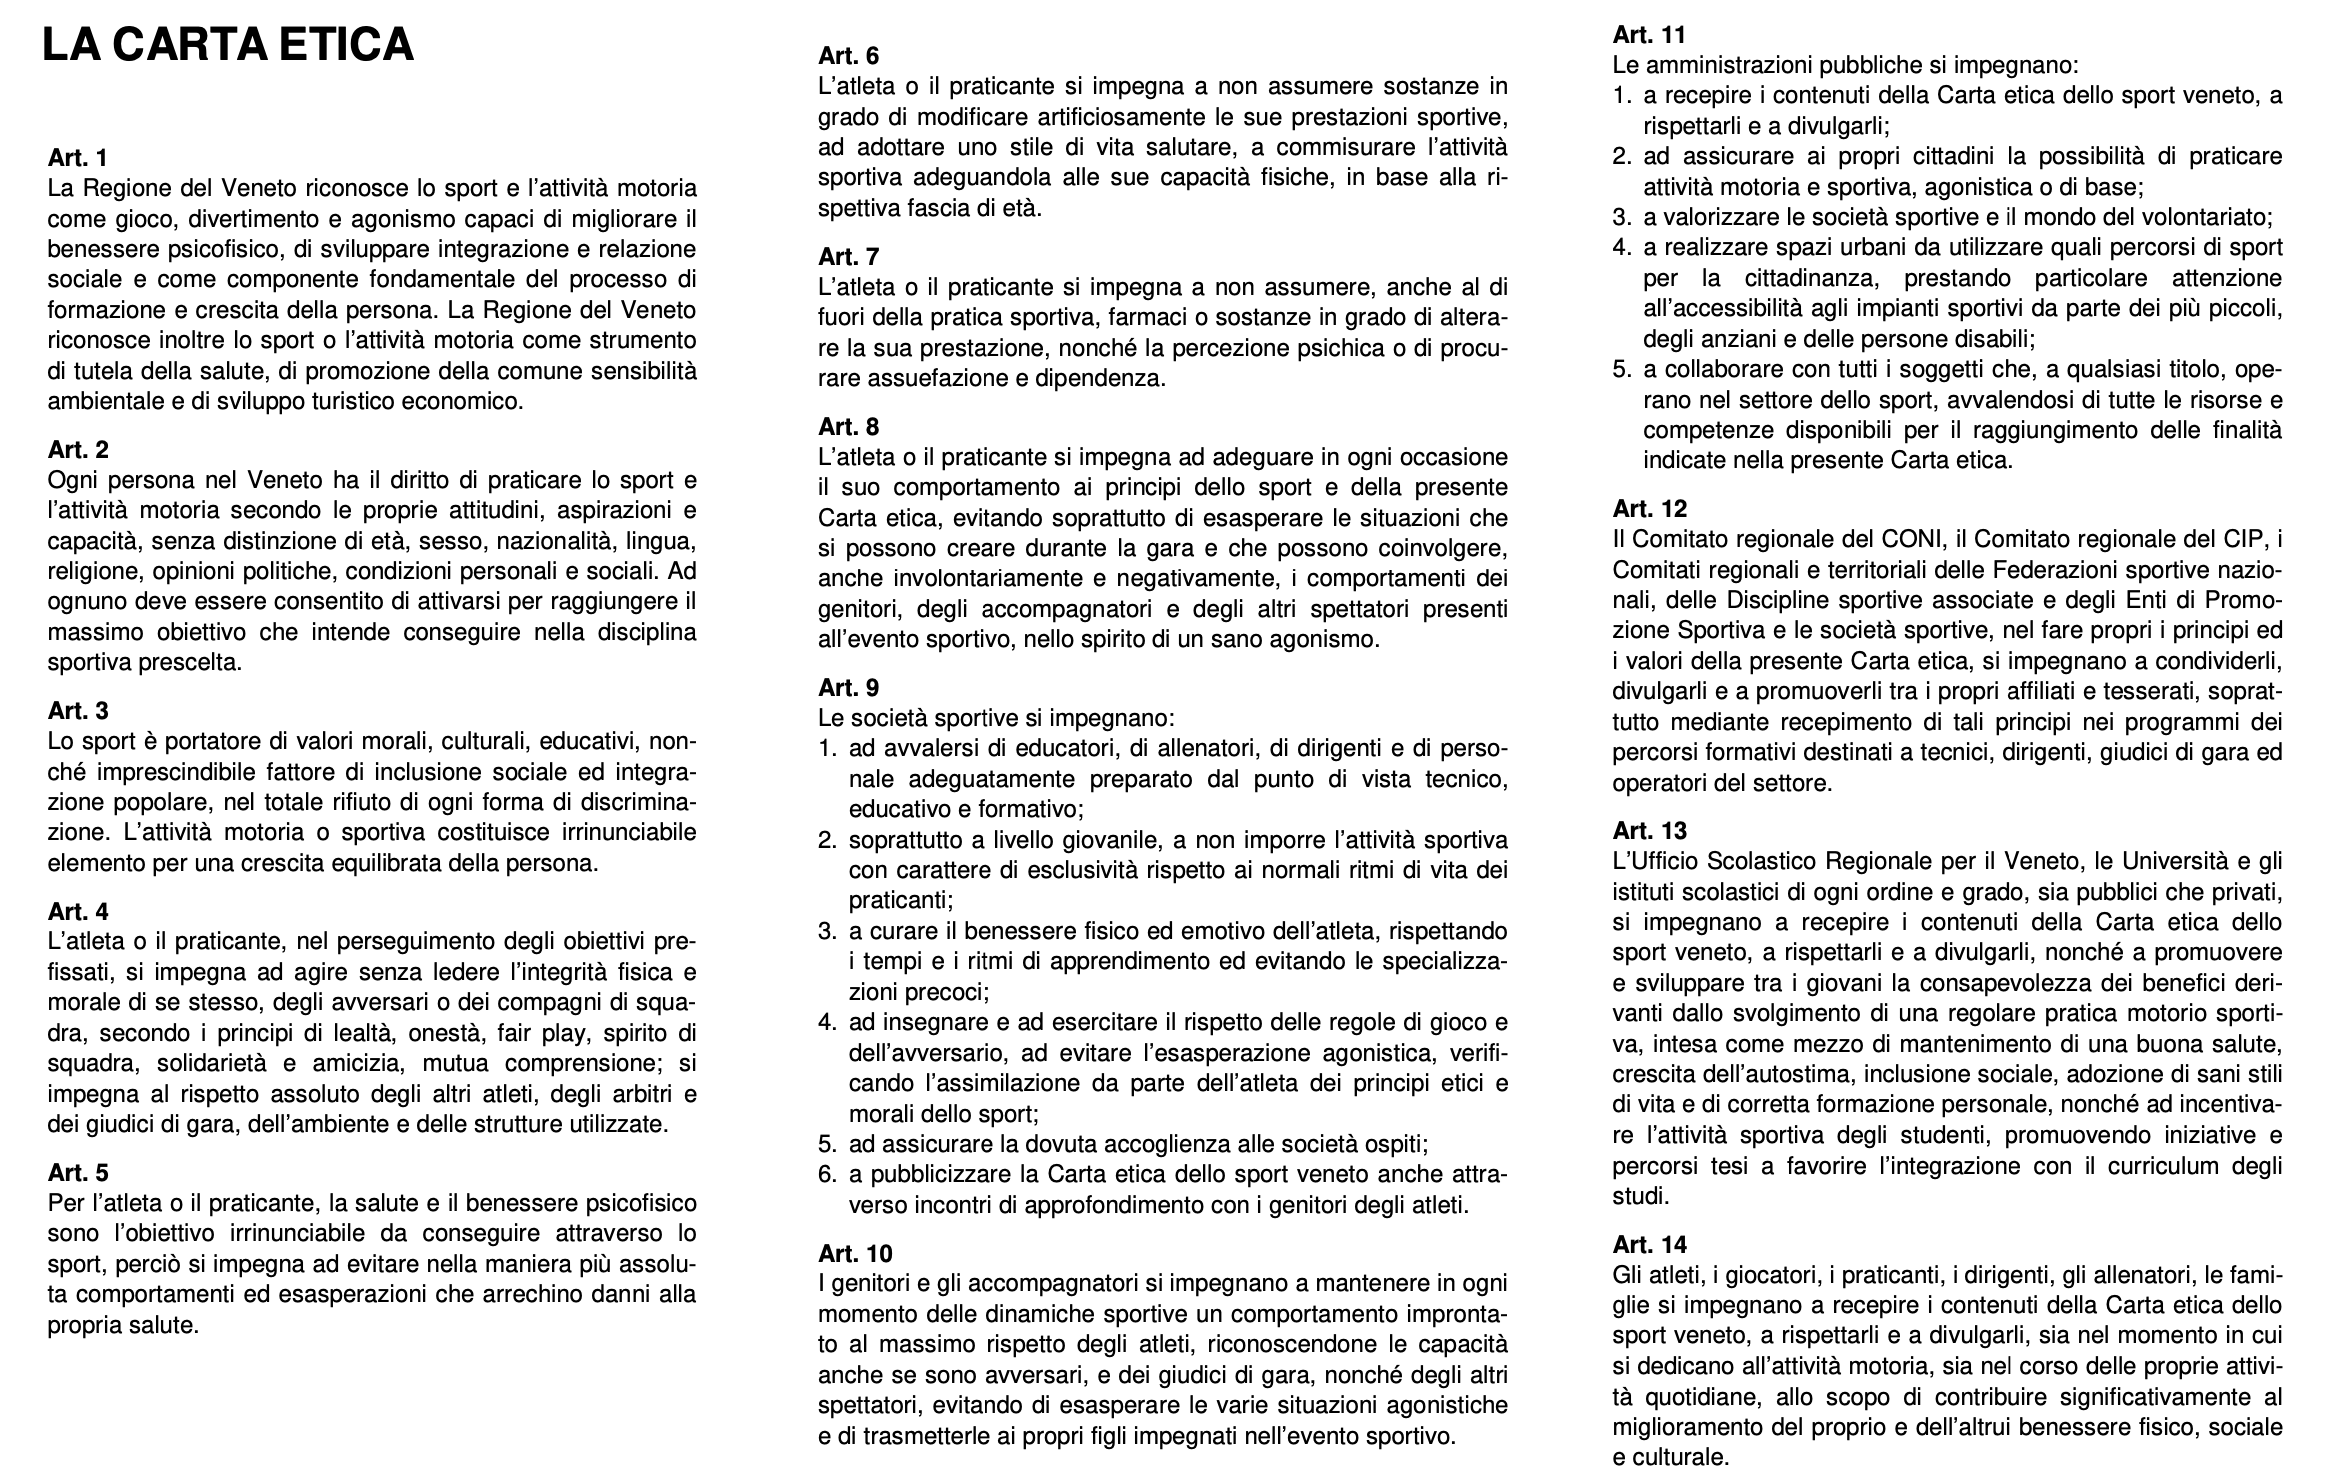 Regione Veneto - Carta Etica dello Sport - Articoli